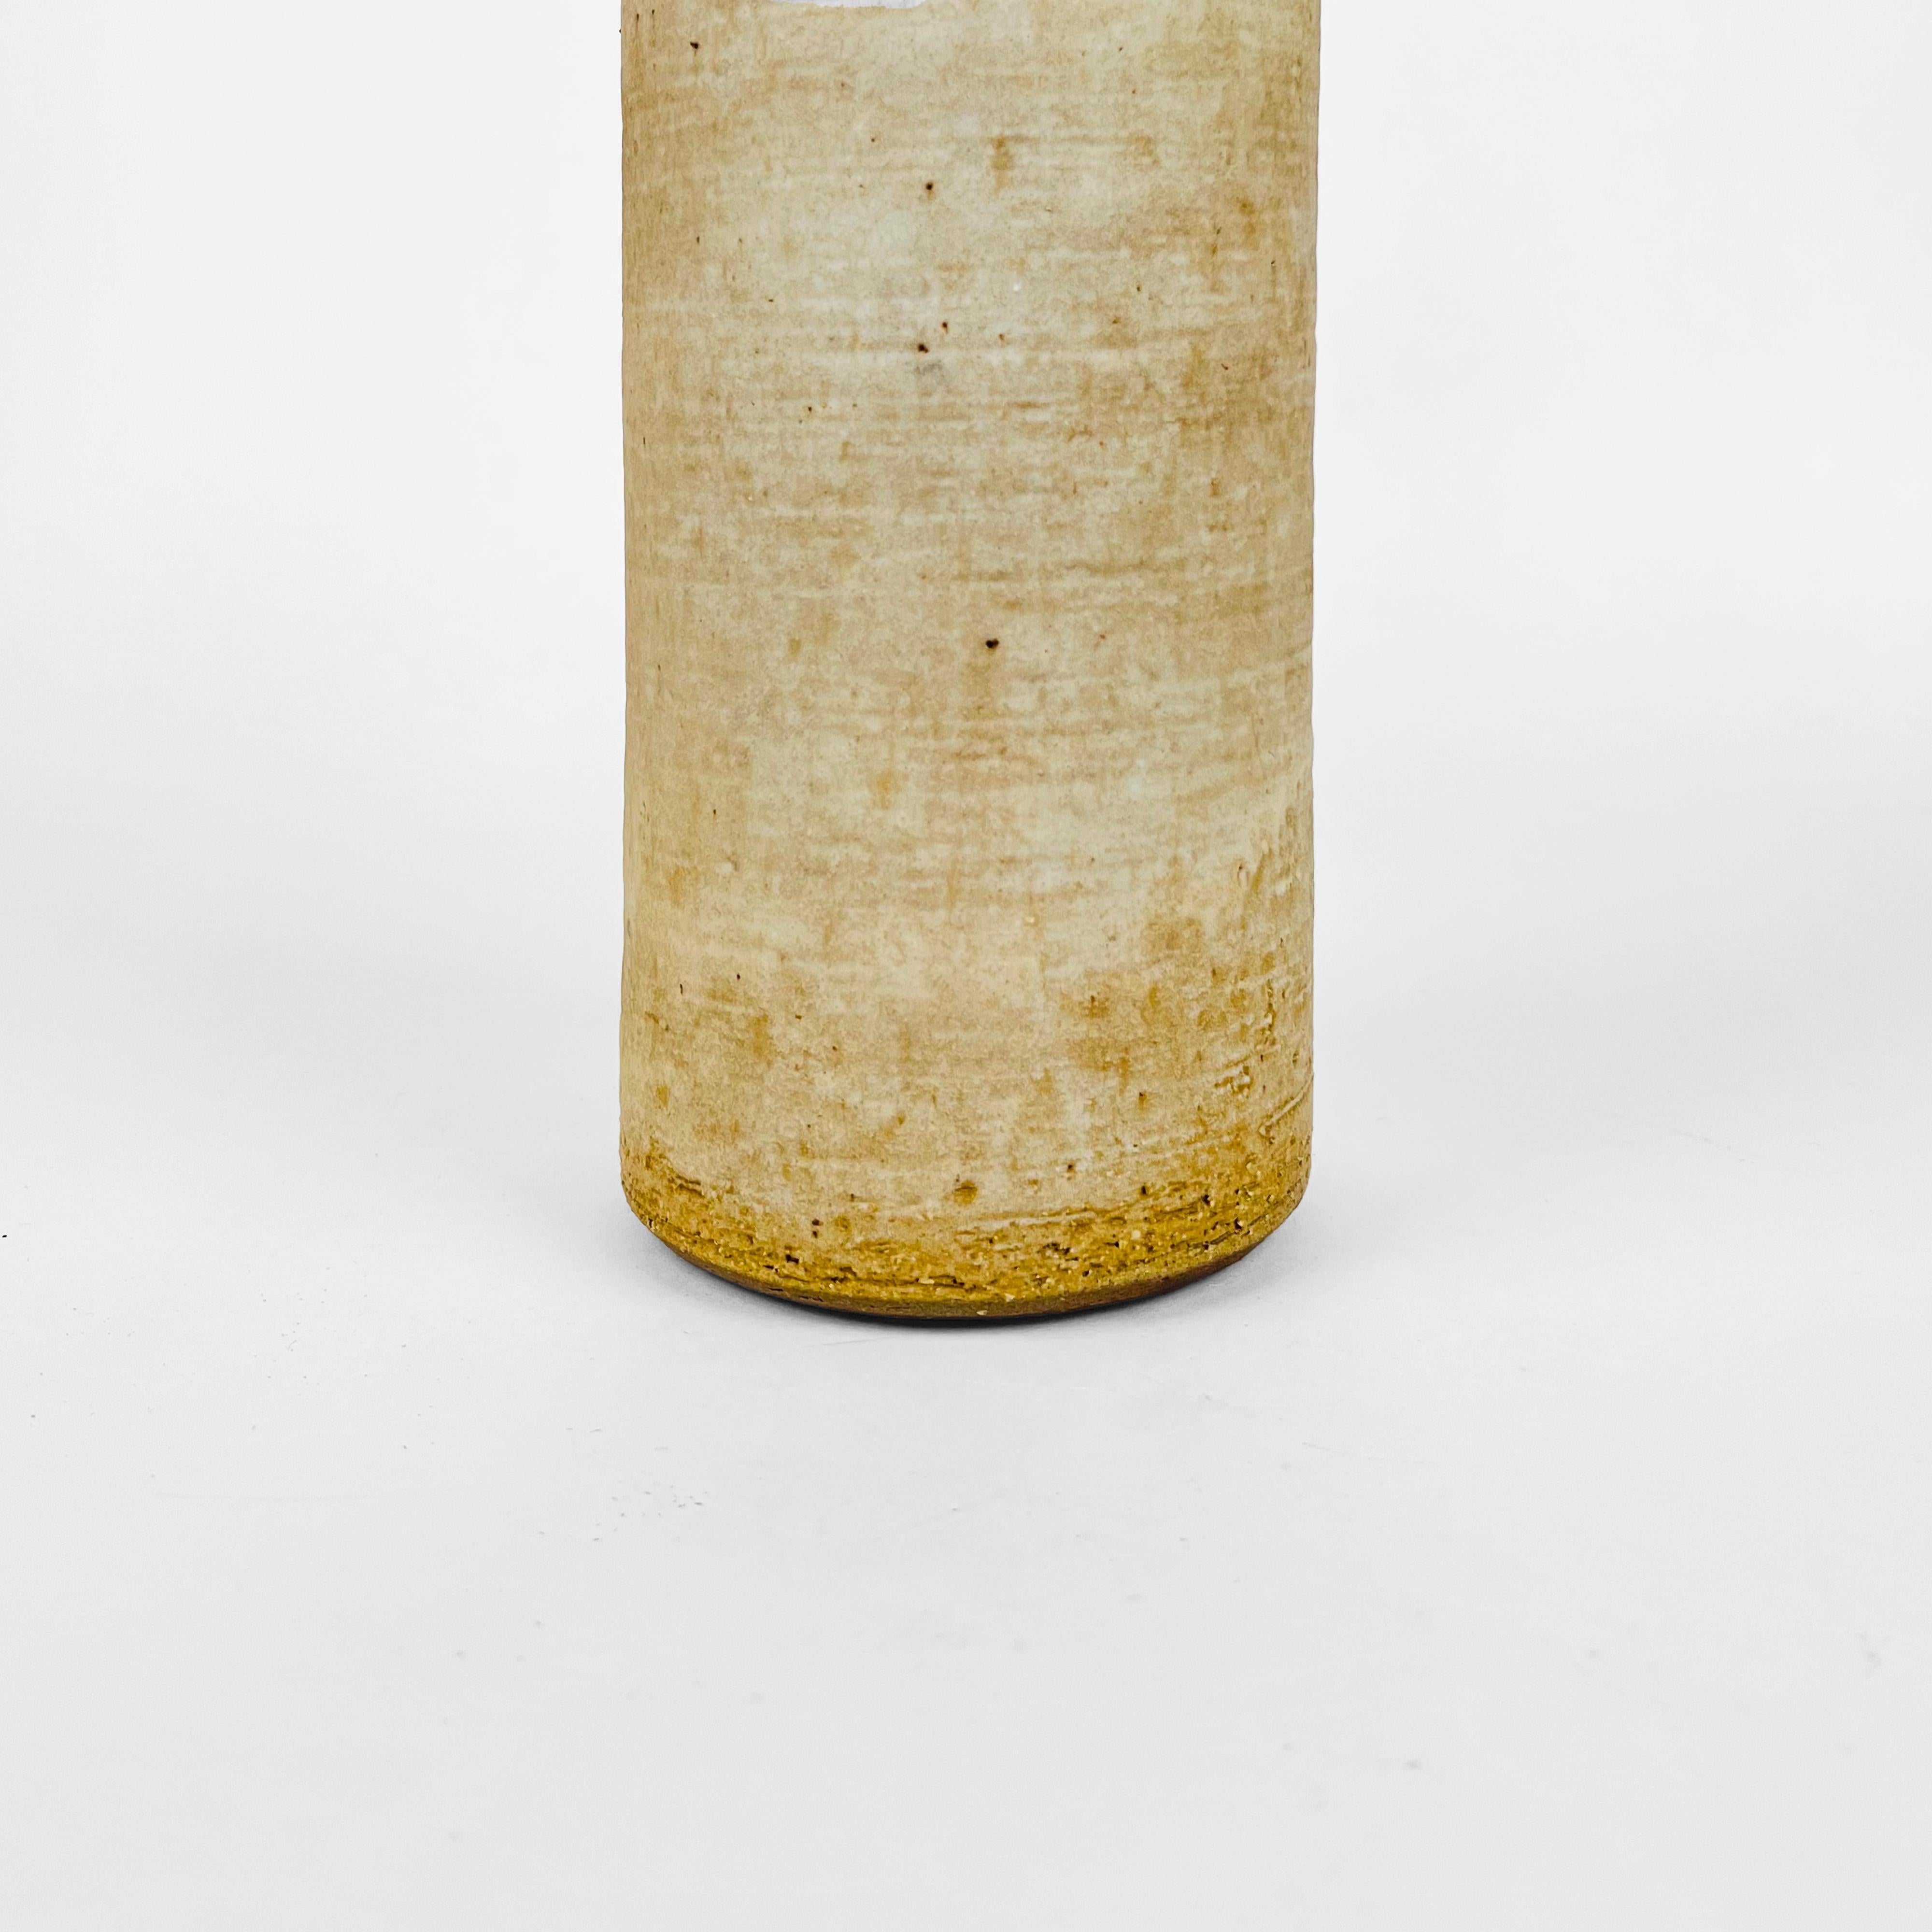 Organic Ceramic Vase by Rudi Stahl, Germany 1970s For Sale 2